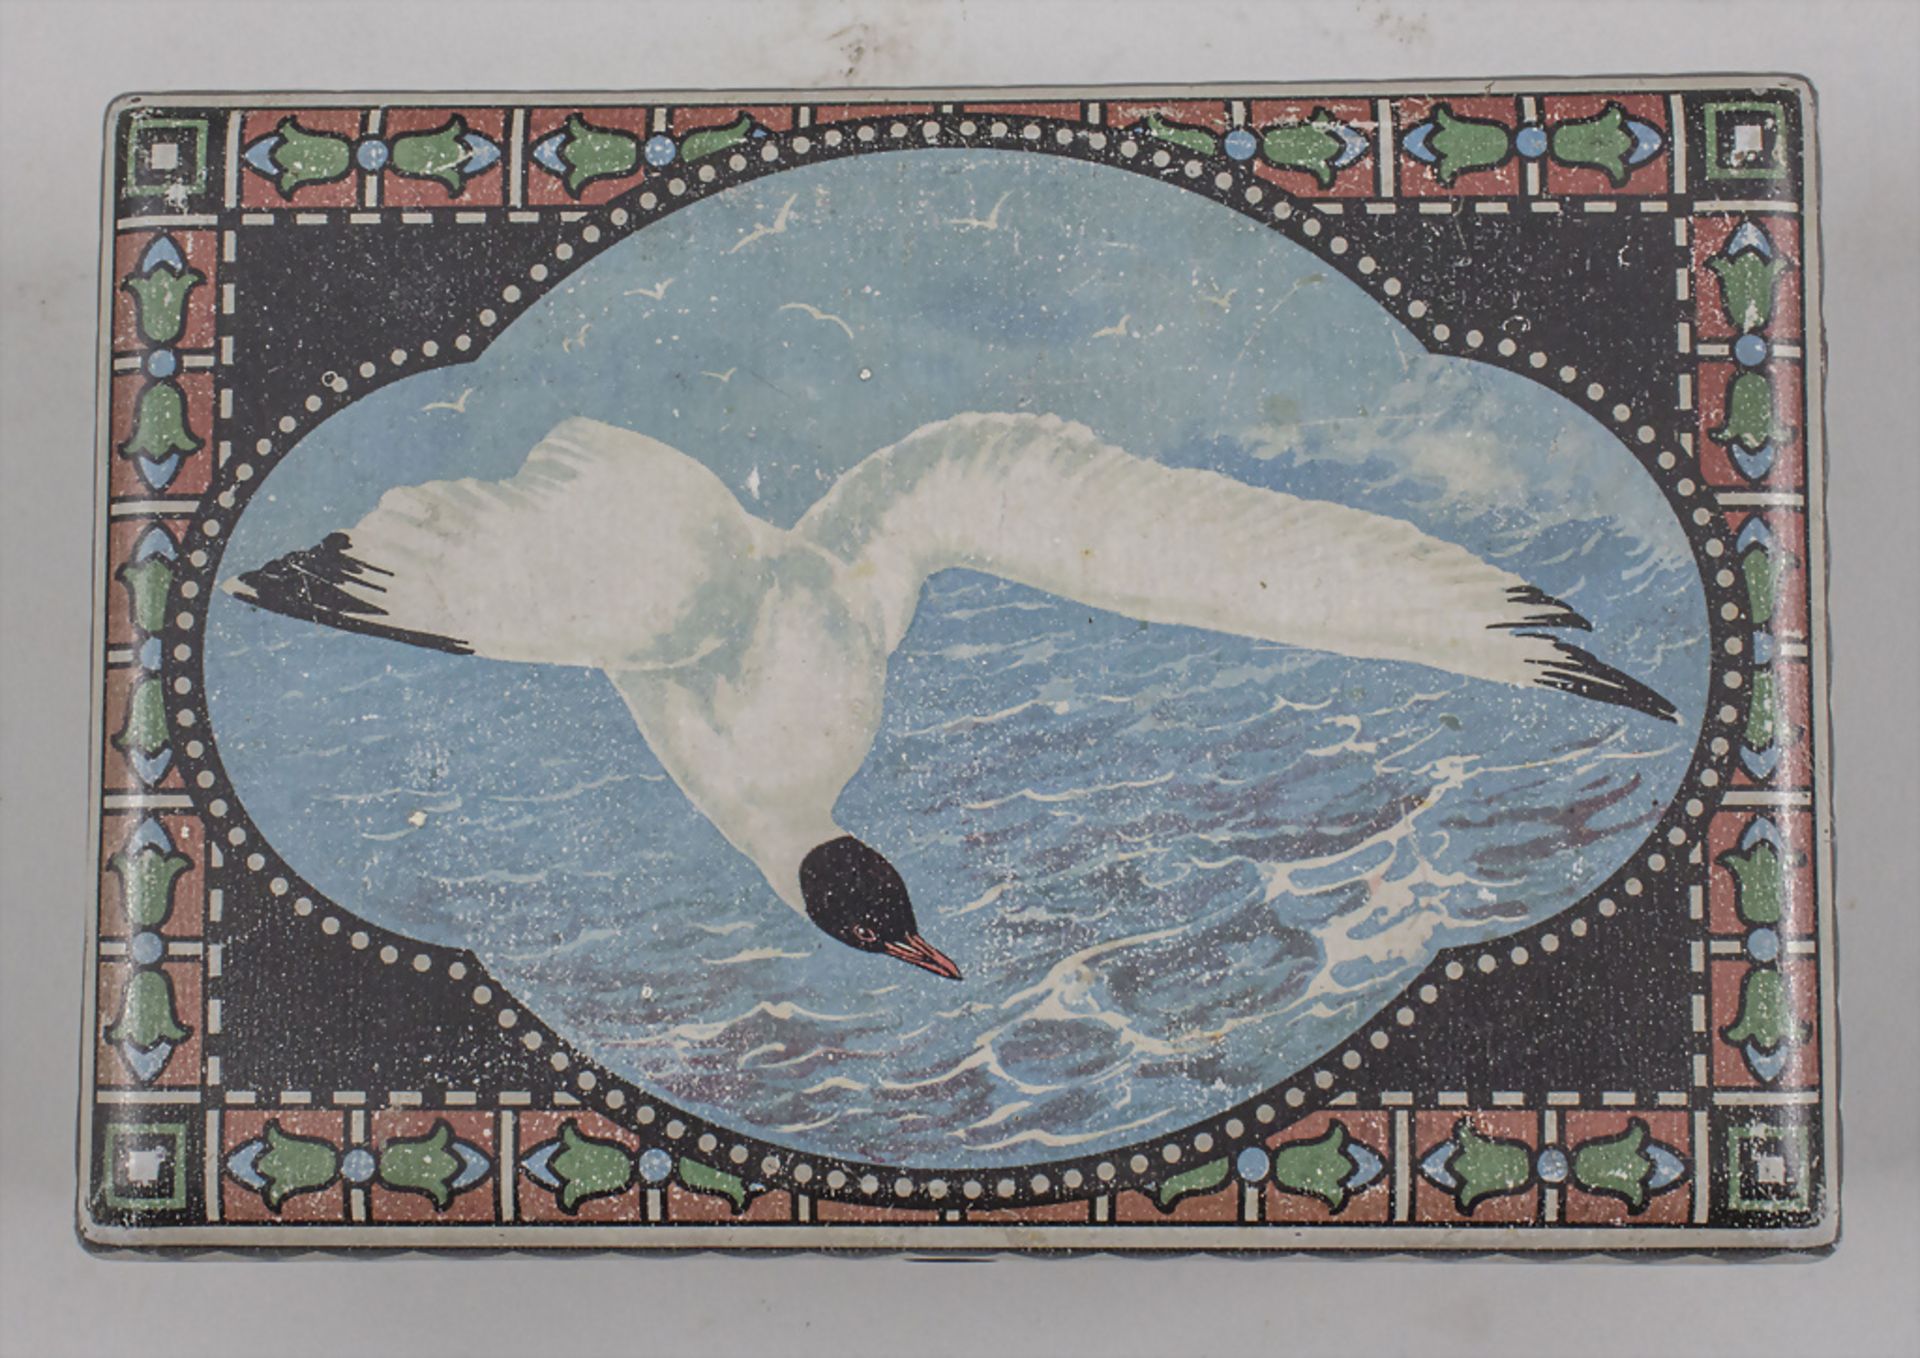 Jugendstil Keksdose mit Möwe / An Art Nouveau cookie jar with a black-headed gull, ... - Bild 3 aus 7